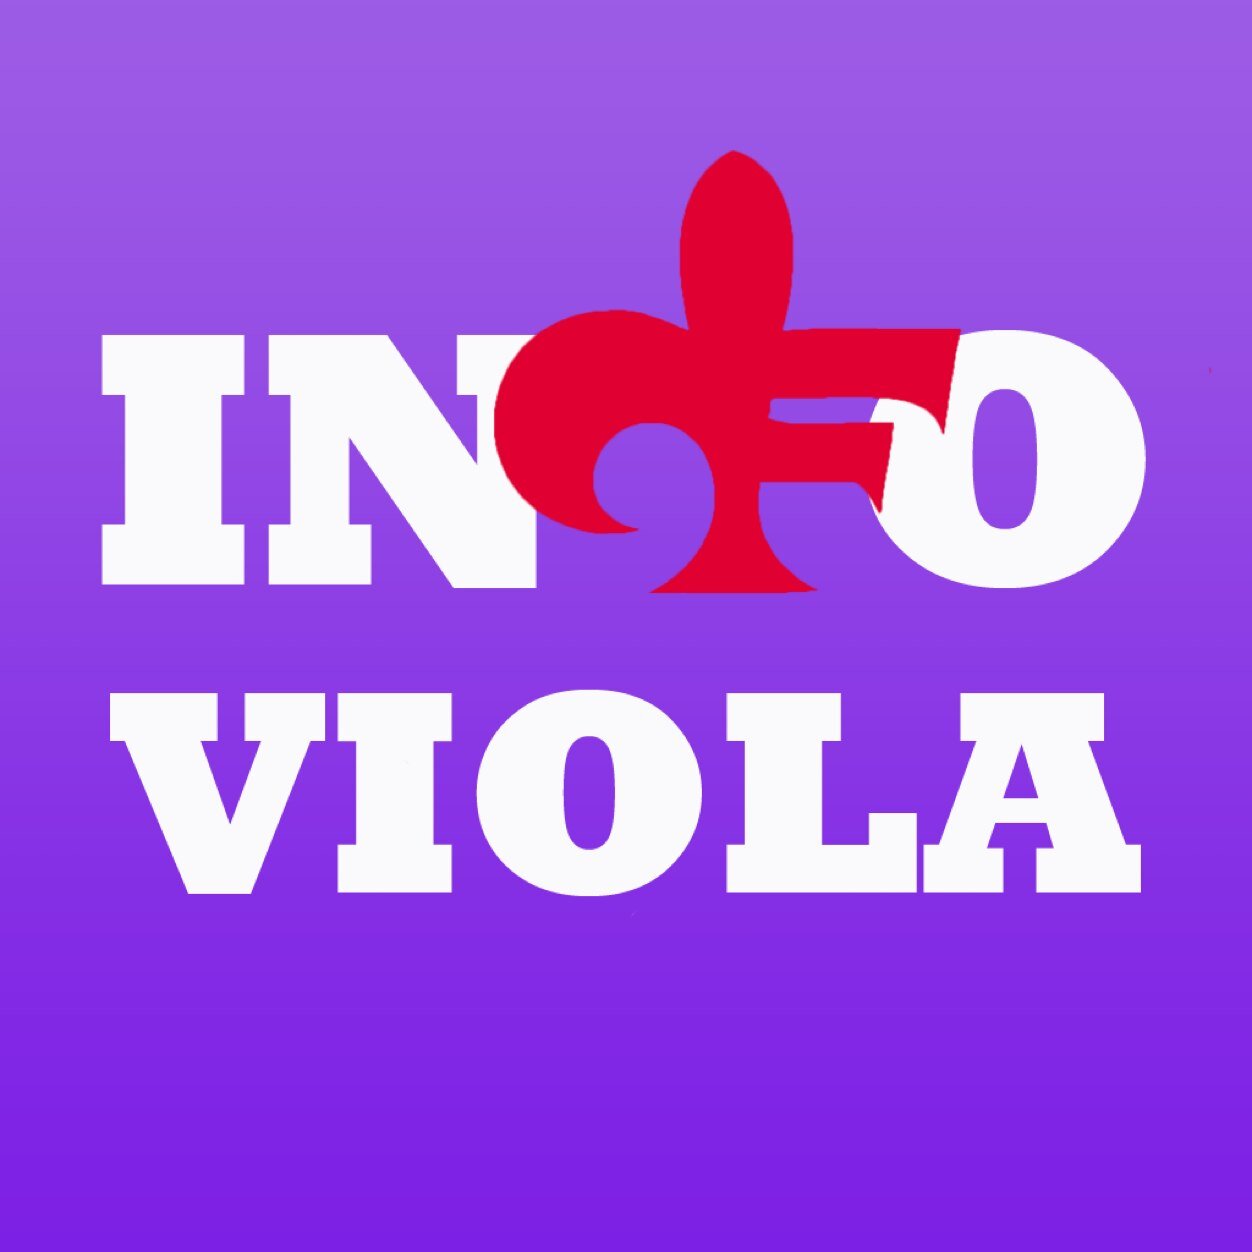 La prima app che raccoglie tutte le notizie sulla Fiorentina.  

https://t.co/MyIhxnqwlg  https://t.co/zEuJrbf0cS